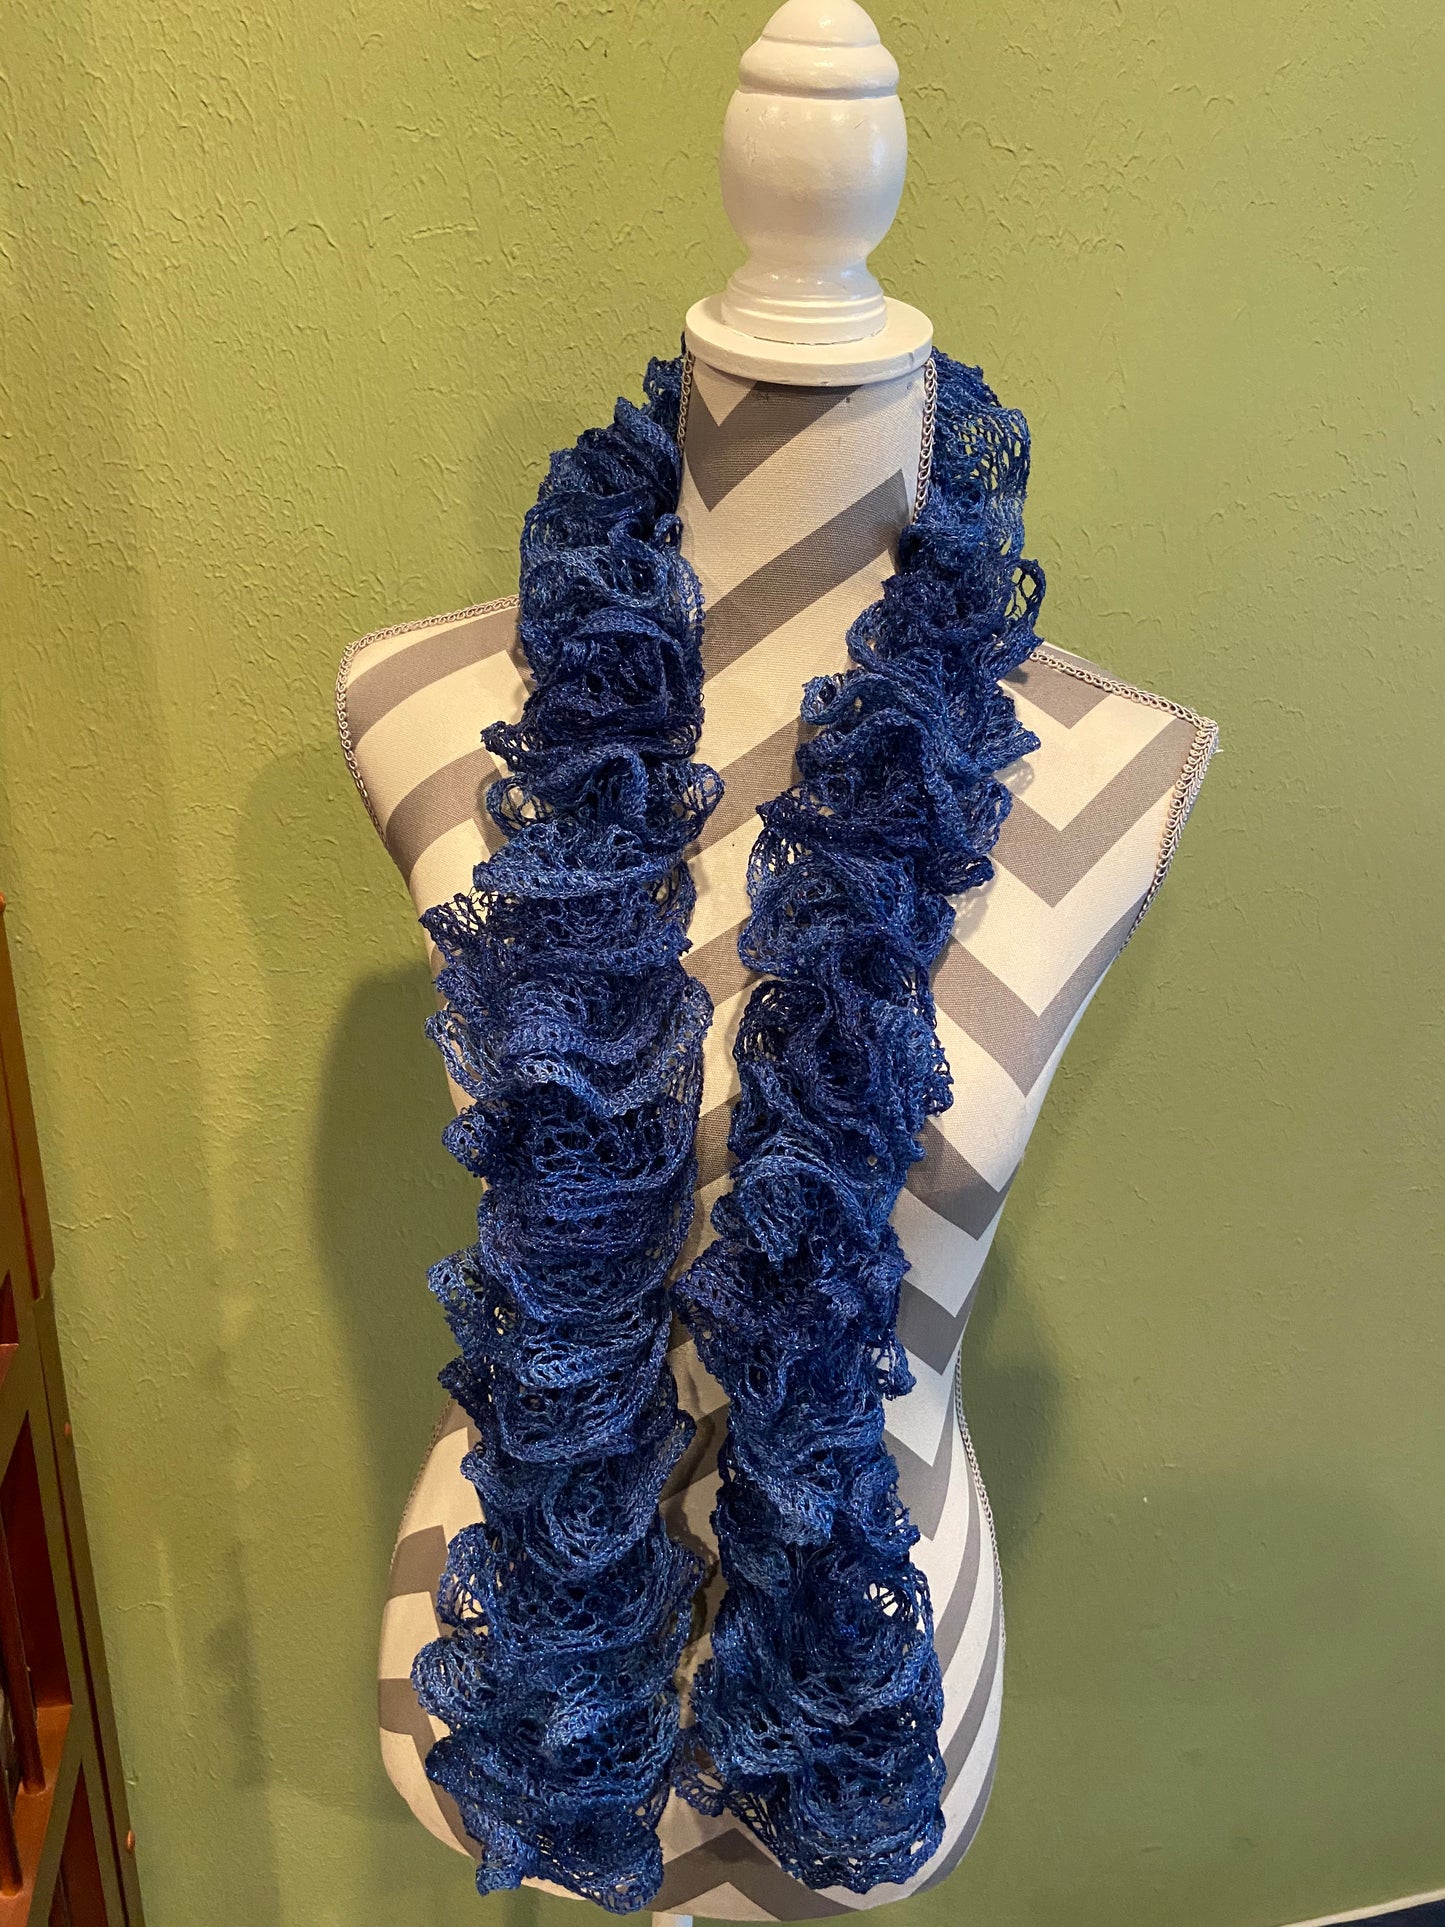 Ruffled Scarf handmade with Sapphire Metallic Sashay yarn